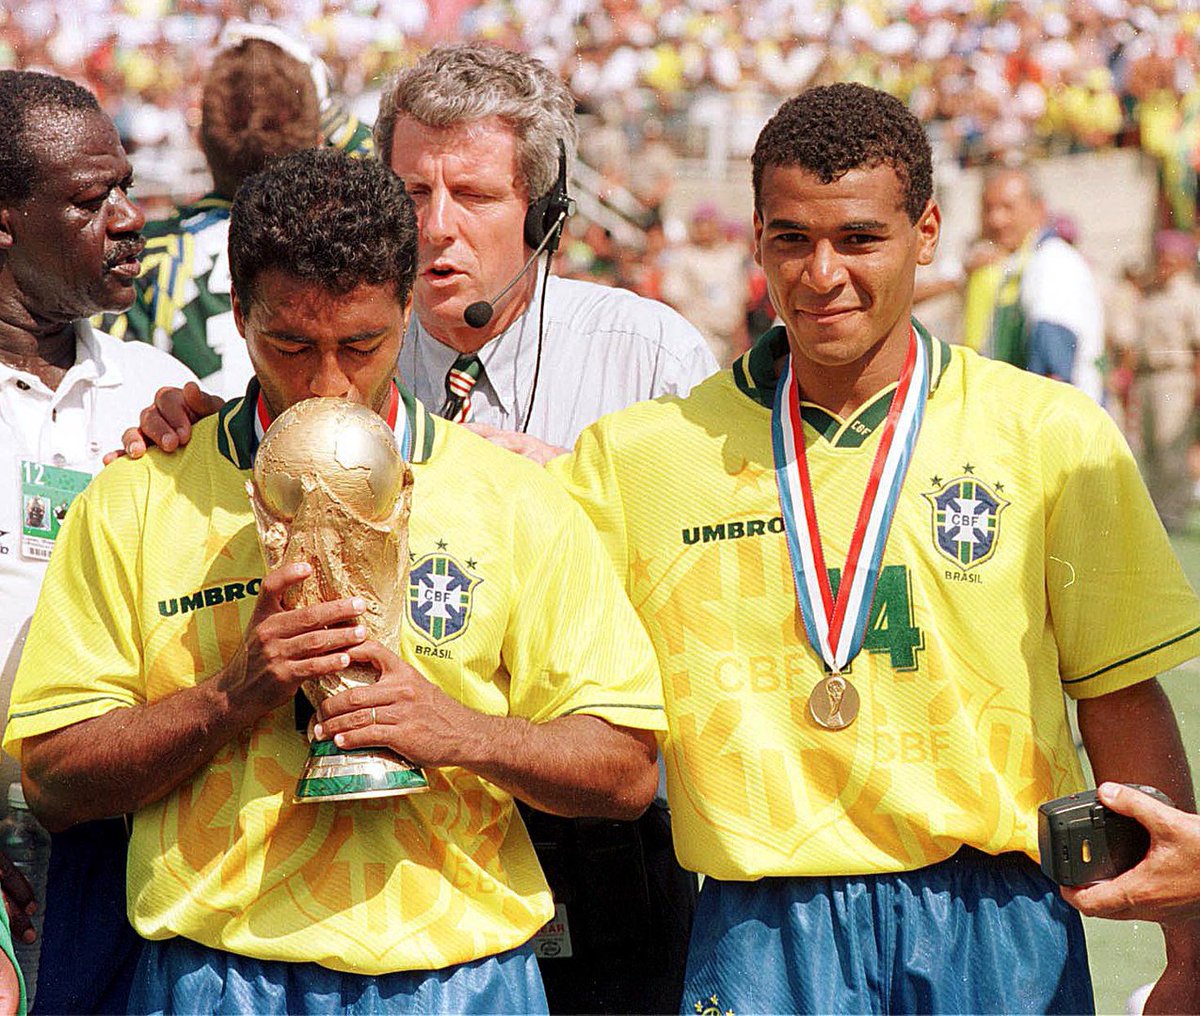 Сколько раз бразилия становилась чемпионом. Ромарио ЧМ 1994. 1994 ЧМ Бразилия Италия.